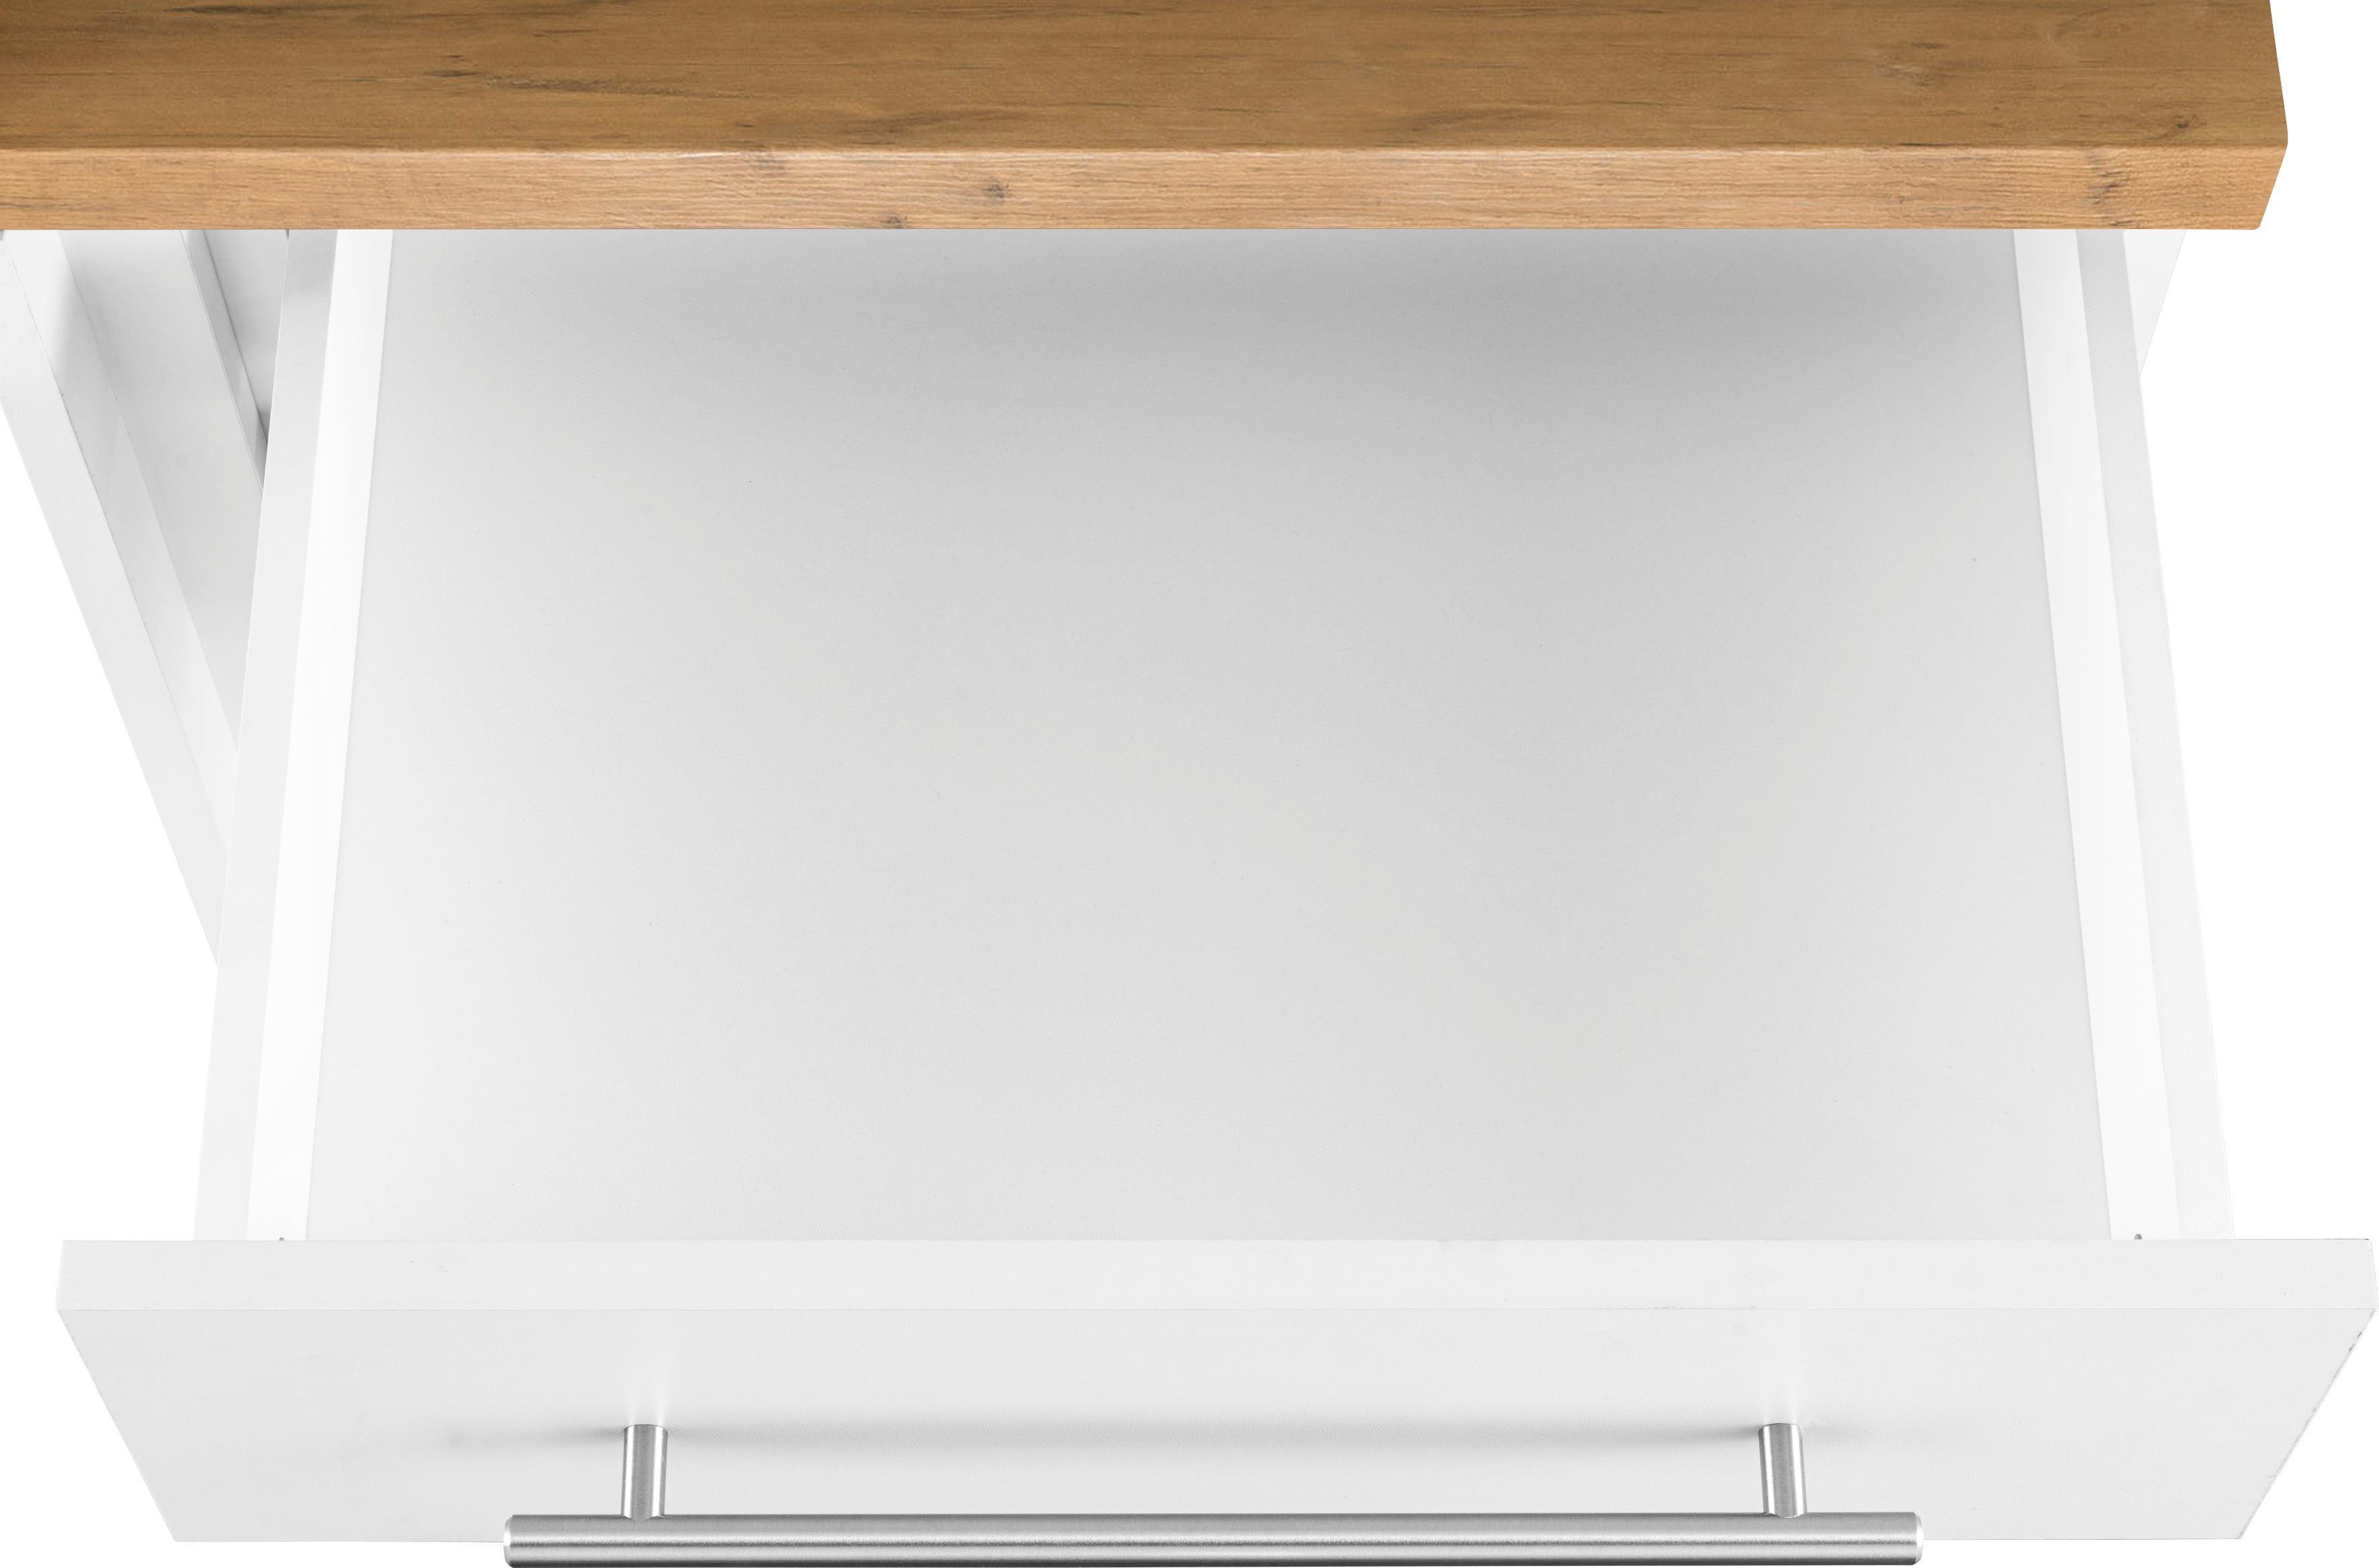 Küchen | breit 110 wiho Weiß cm Eckunterschrank Unna weiß/kastelleichefarben